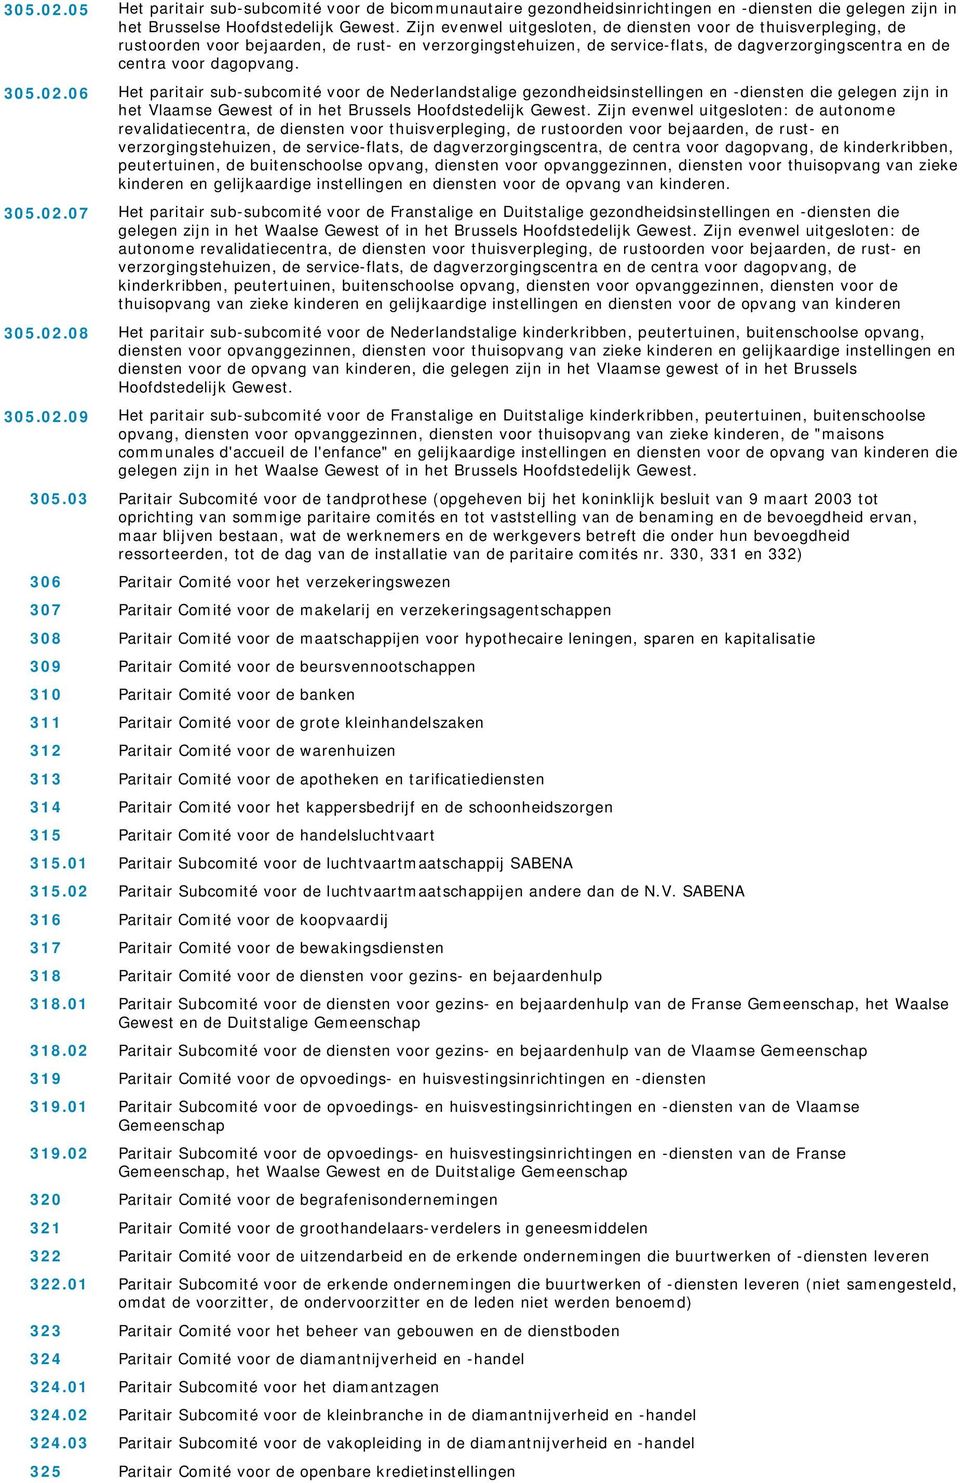 305.02.06 Het paritair sub-subcomité voor de Nederlandstalige gezondheidsinstellingen en -diensten die gelegen zijn in het Vlaamse Gewest of in het Brussels Hoofdstedelijk Gewest.